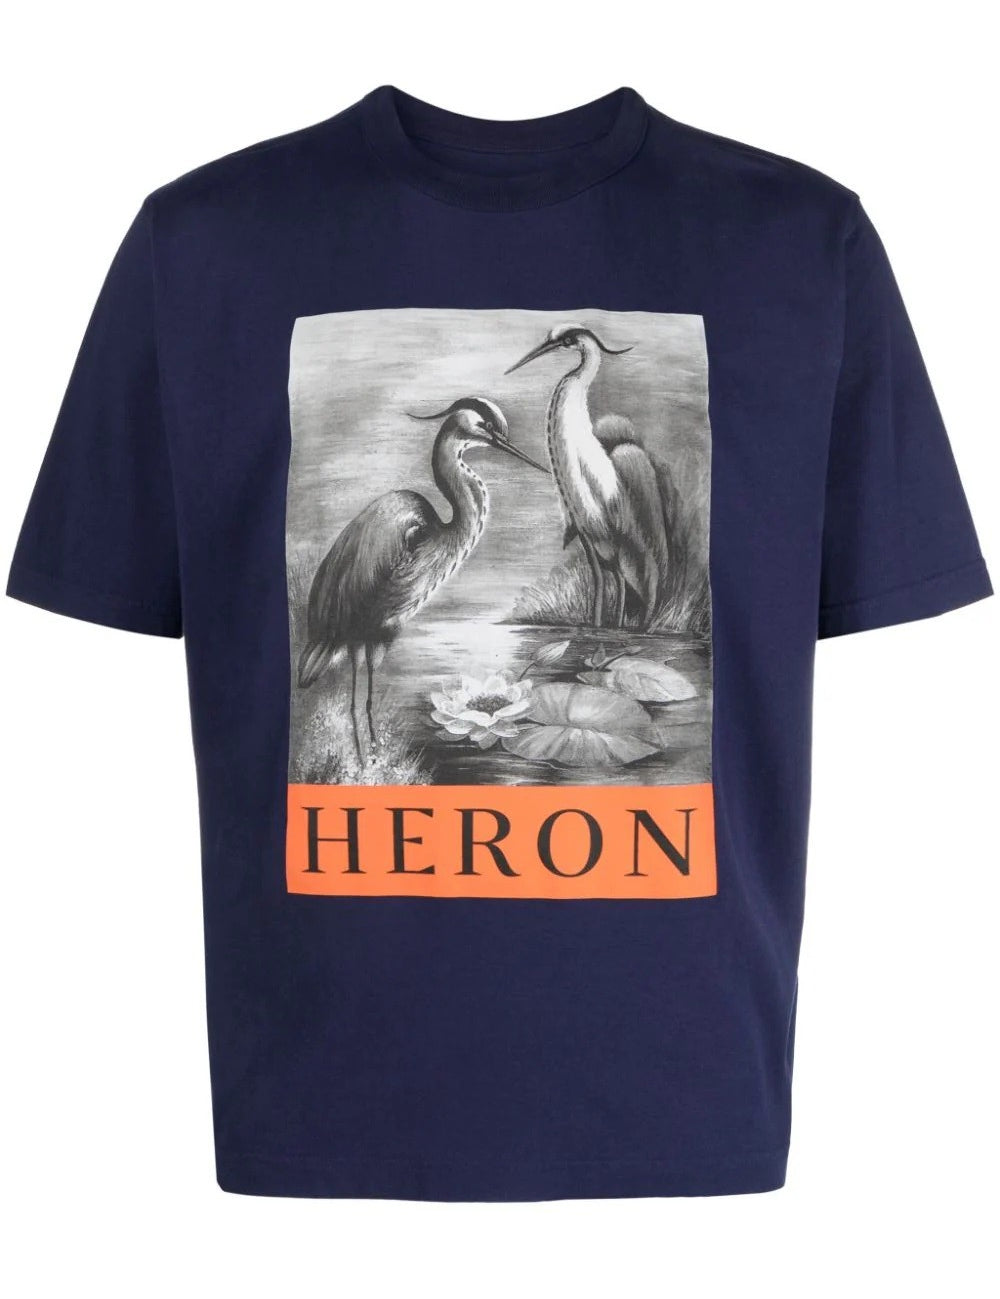 heron-bw-t-shirt.jpg